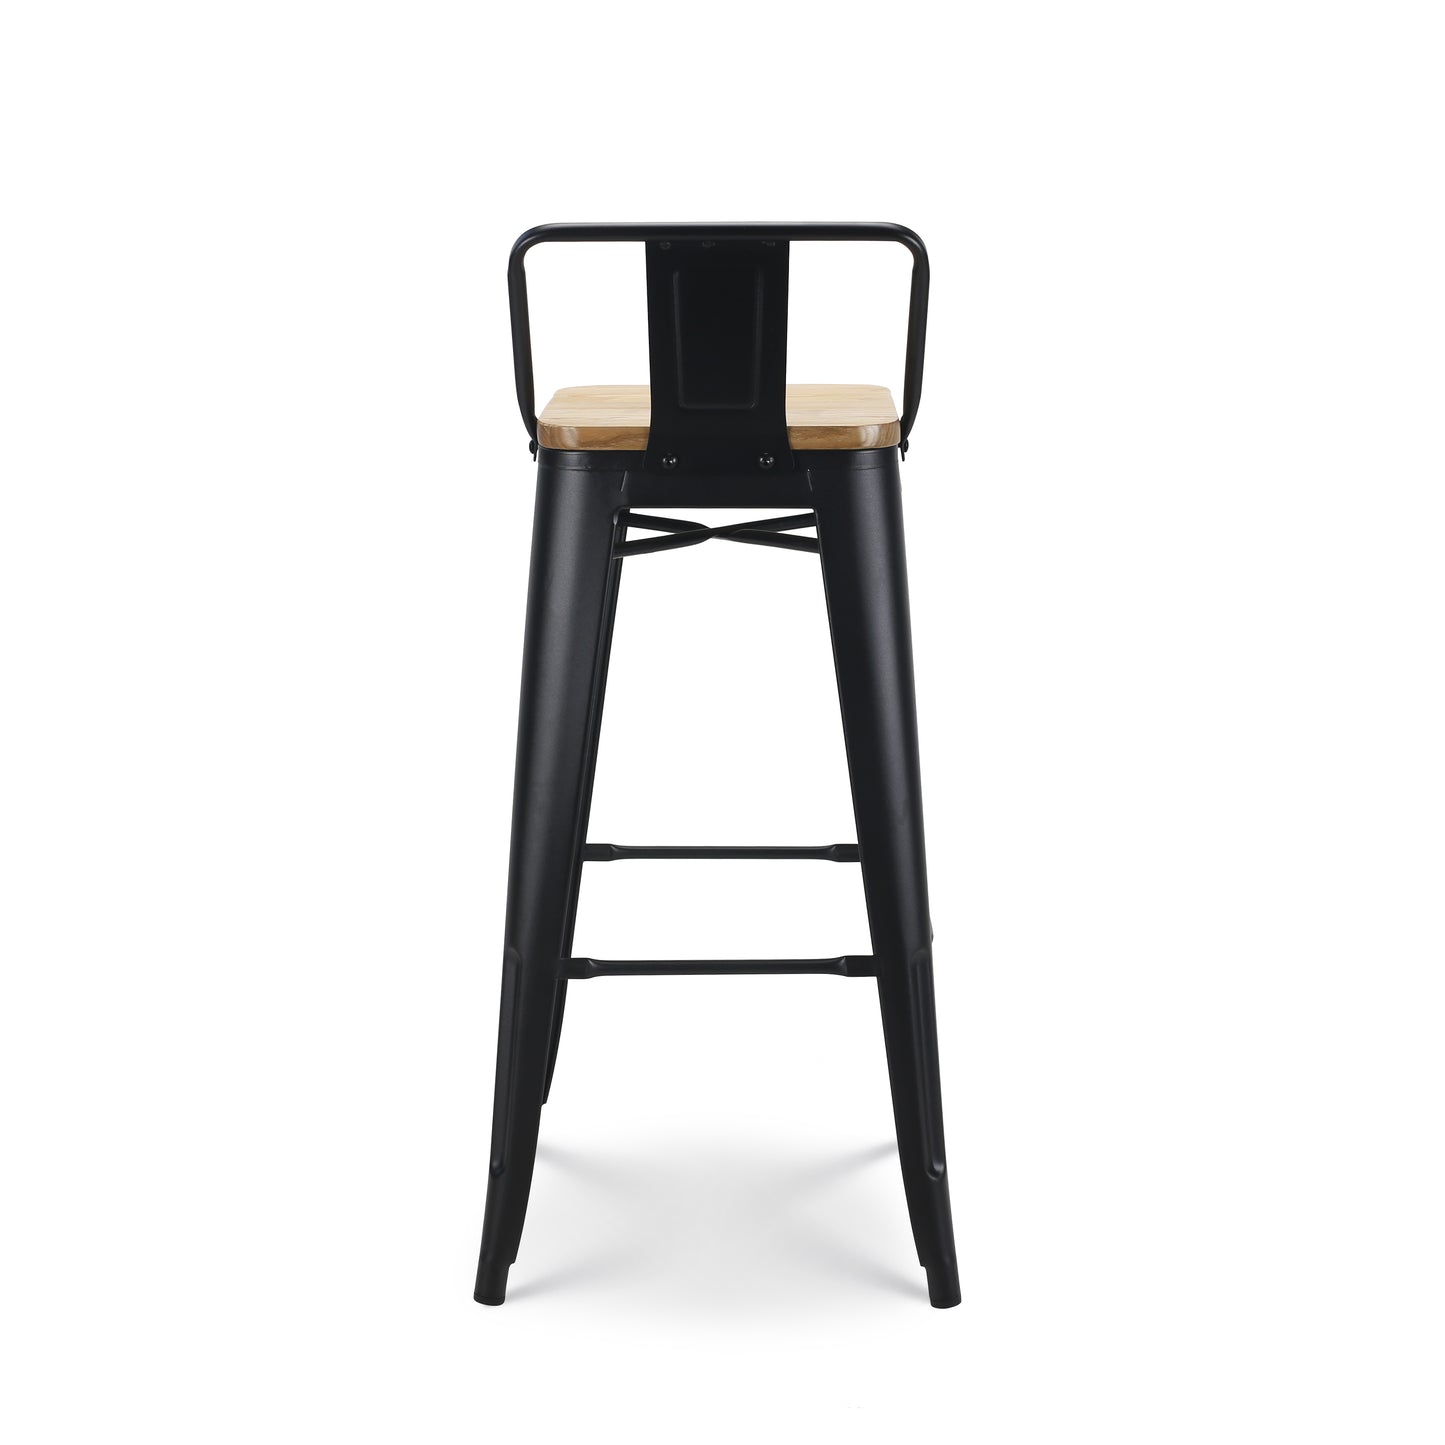 Tabouret de bar en métal noir mat style industriel avec dossier et assise en bois clair - Hauteur 76 cm